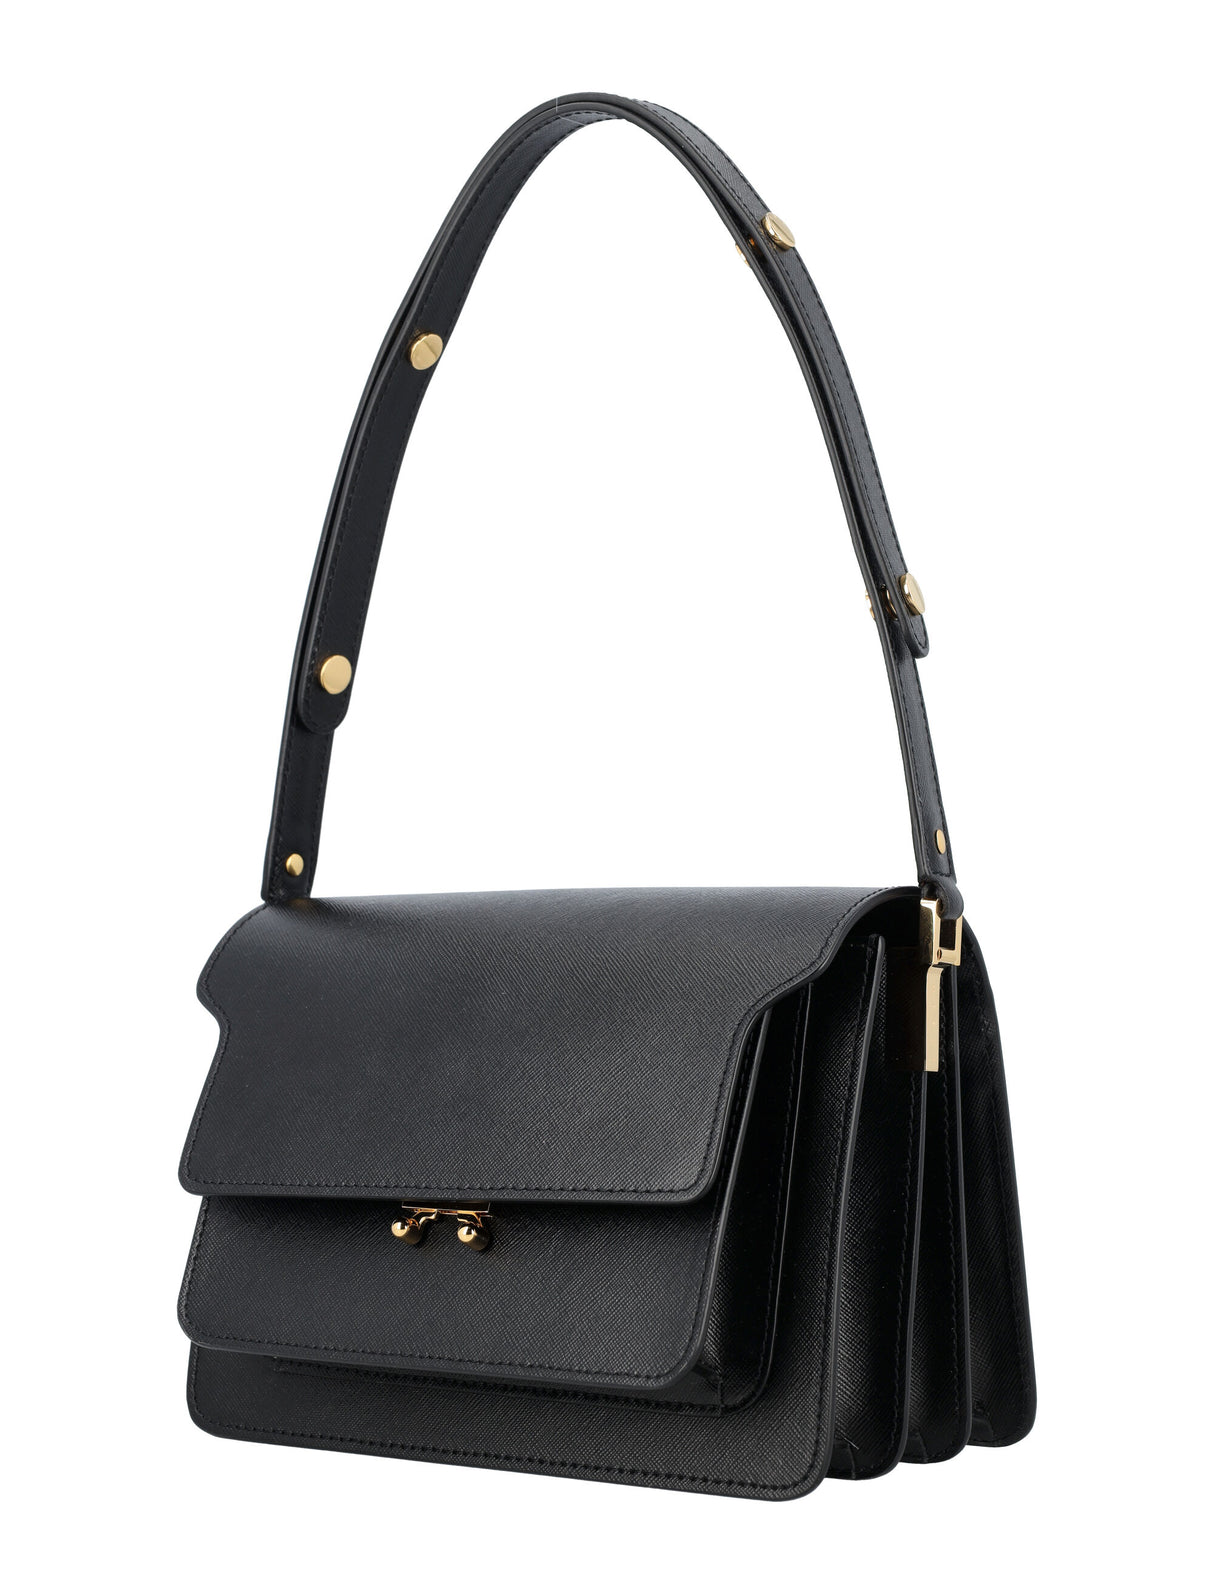 Túi xách thời trang da màu đen dành cho nữ từ bộ sưu tập SS24 của nhà thiết kế sang trọng